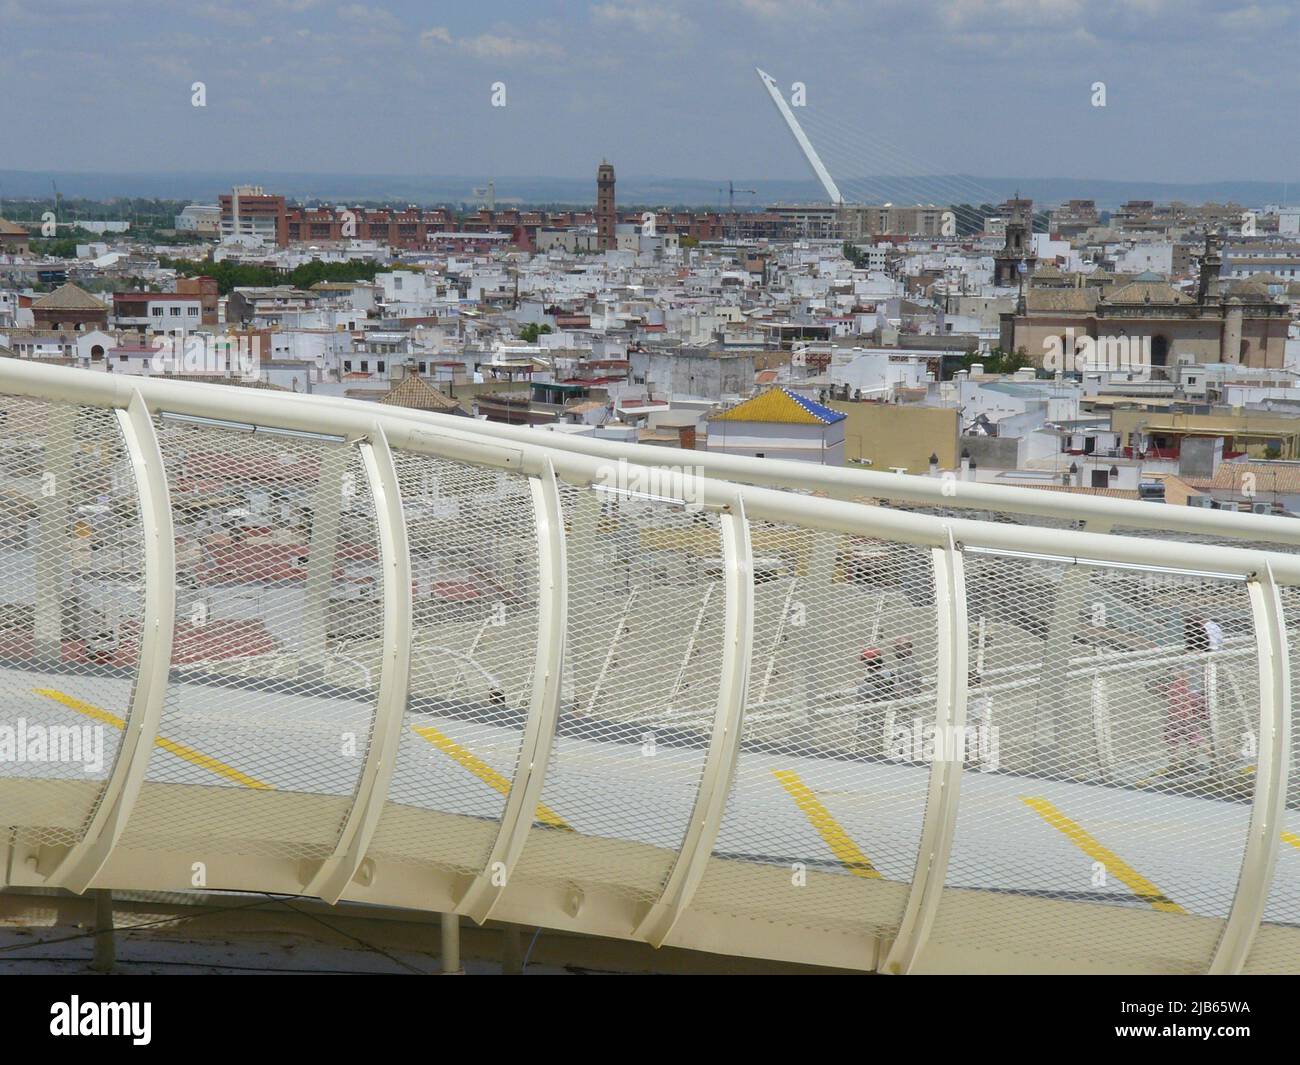 Séville (Espagne). Conception sur les passerelles supérieures du parasol Metropol également connu sous le nom de Seas de Sevilla. Banque D'Images